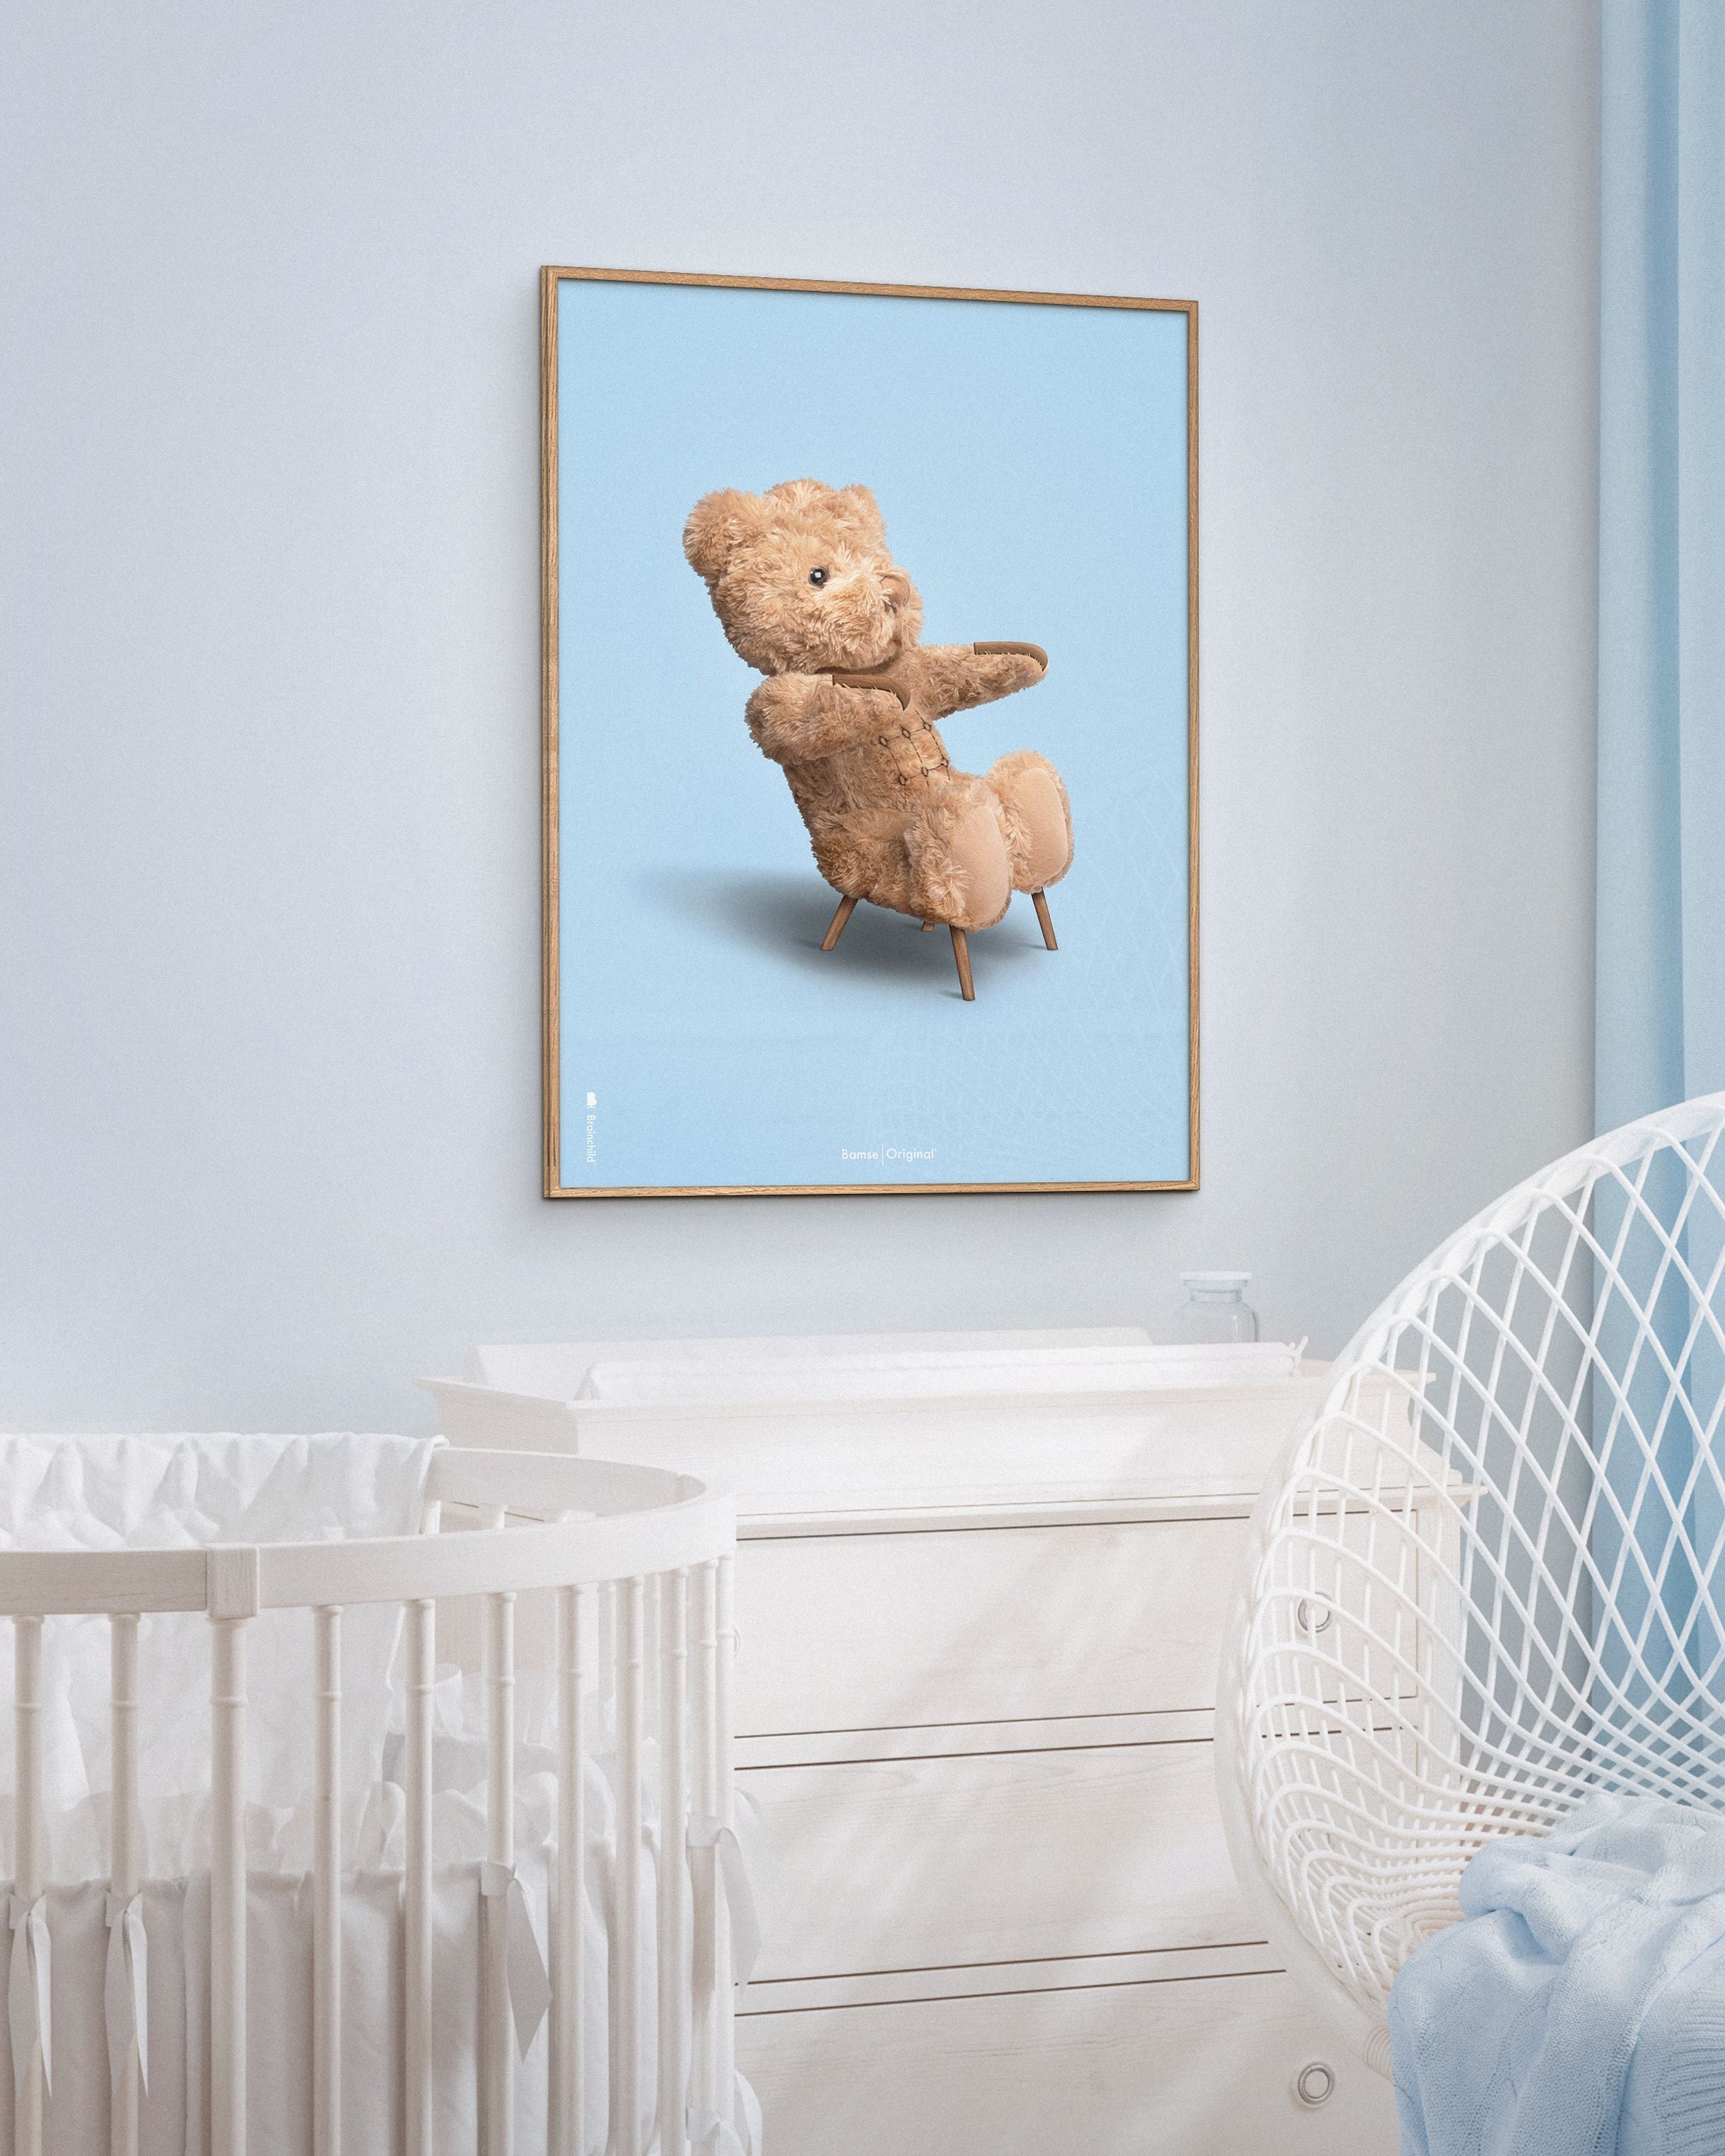 Brainchild Teddybär Classic Posterrahmen aus dunklem Holz Ram 30x40 Cm, hellblauer Hintergrund